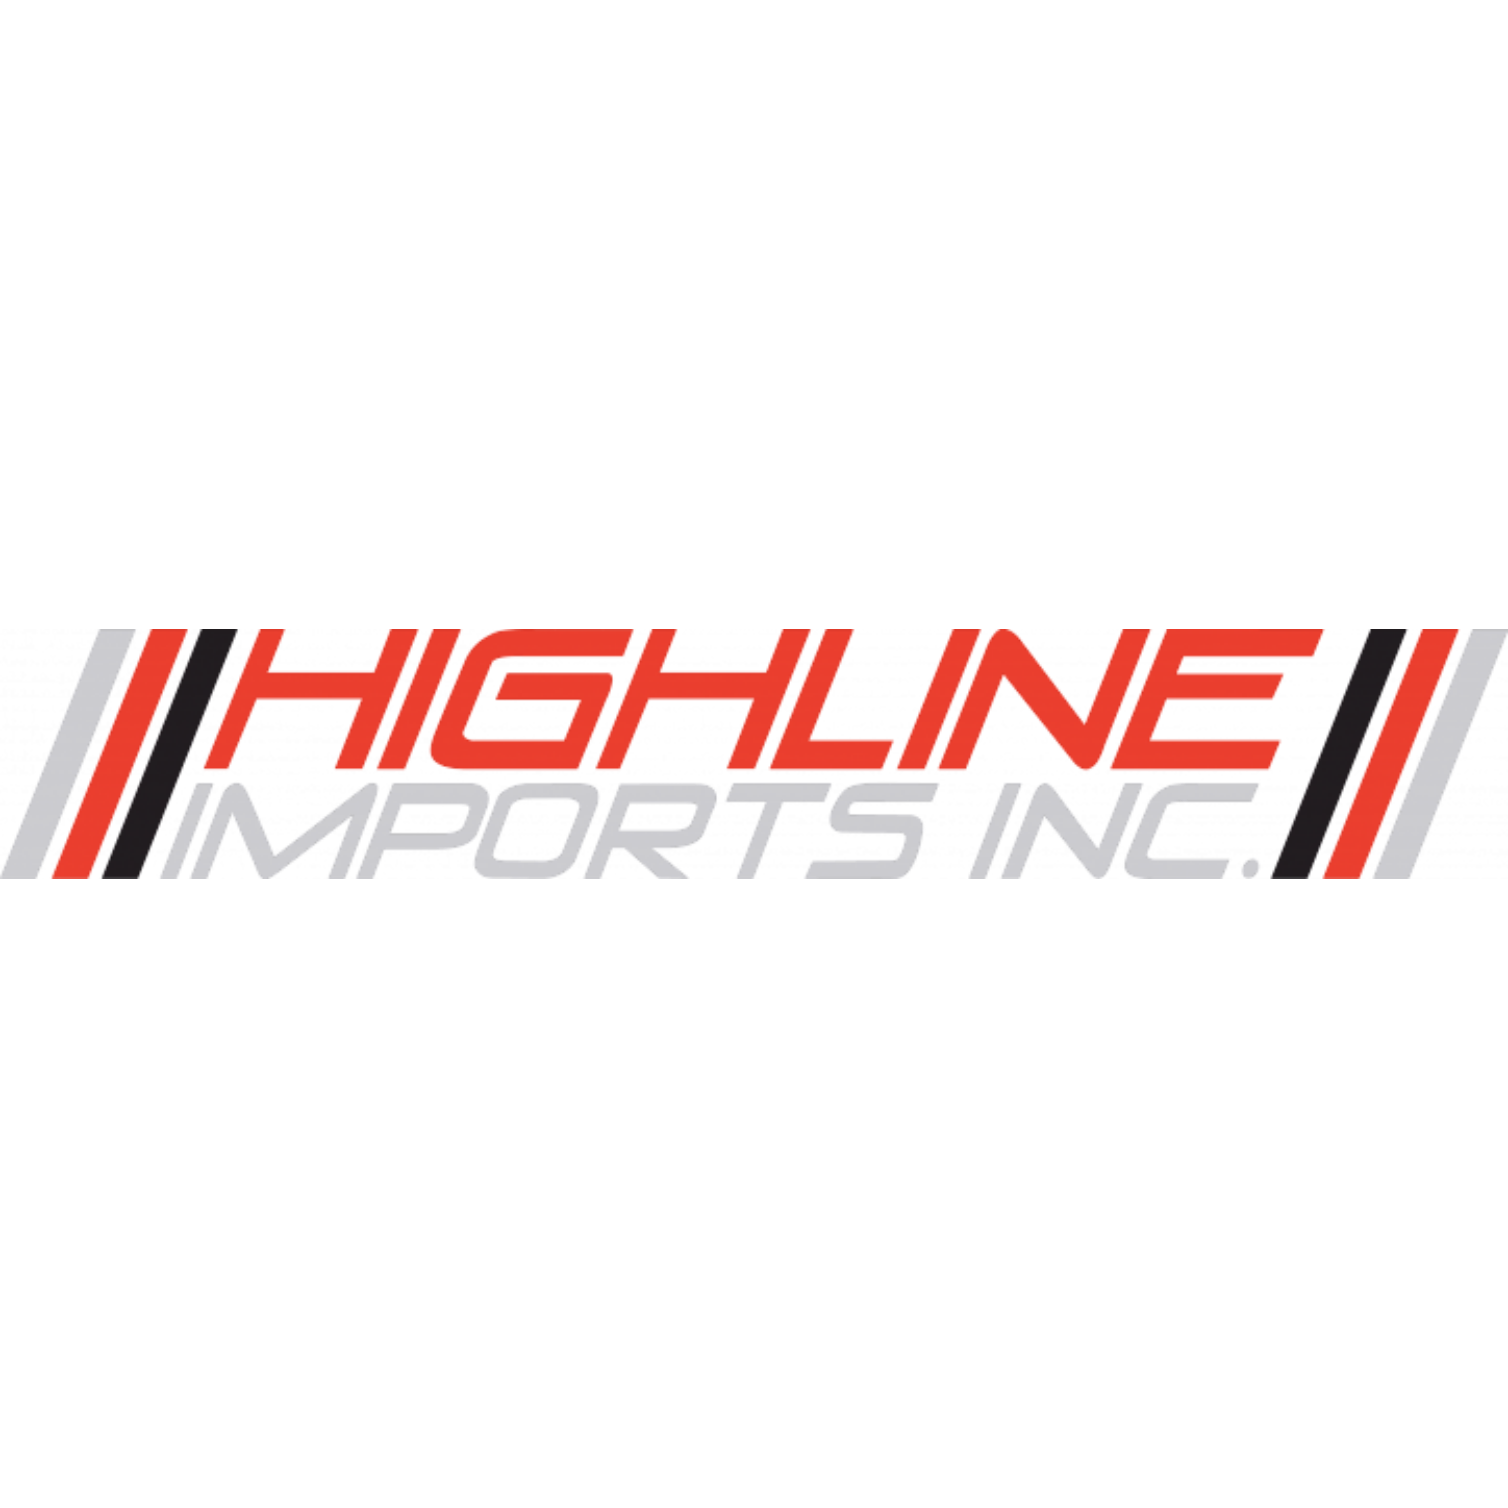 Highline Imports Inc.